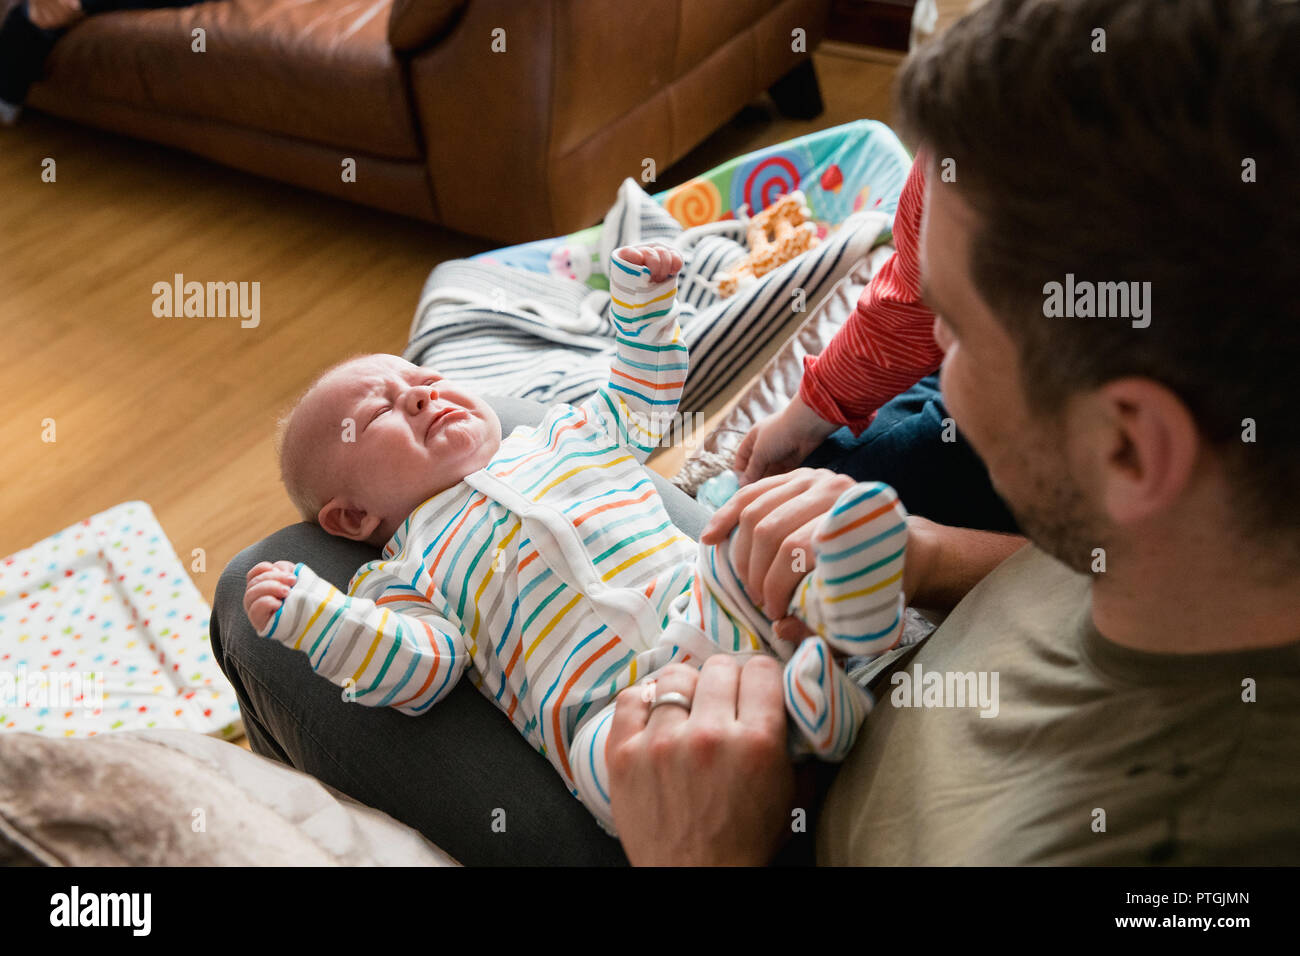 Mitte - Erwachsene Vater spielen und seine New Born Baby jungen Beine halten und ihn zu trösten versucht, während er weint. Stockfoto